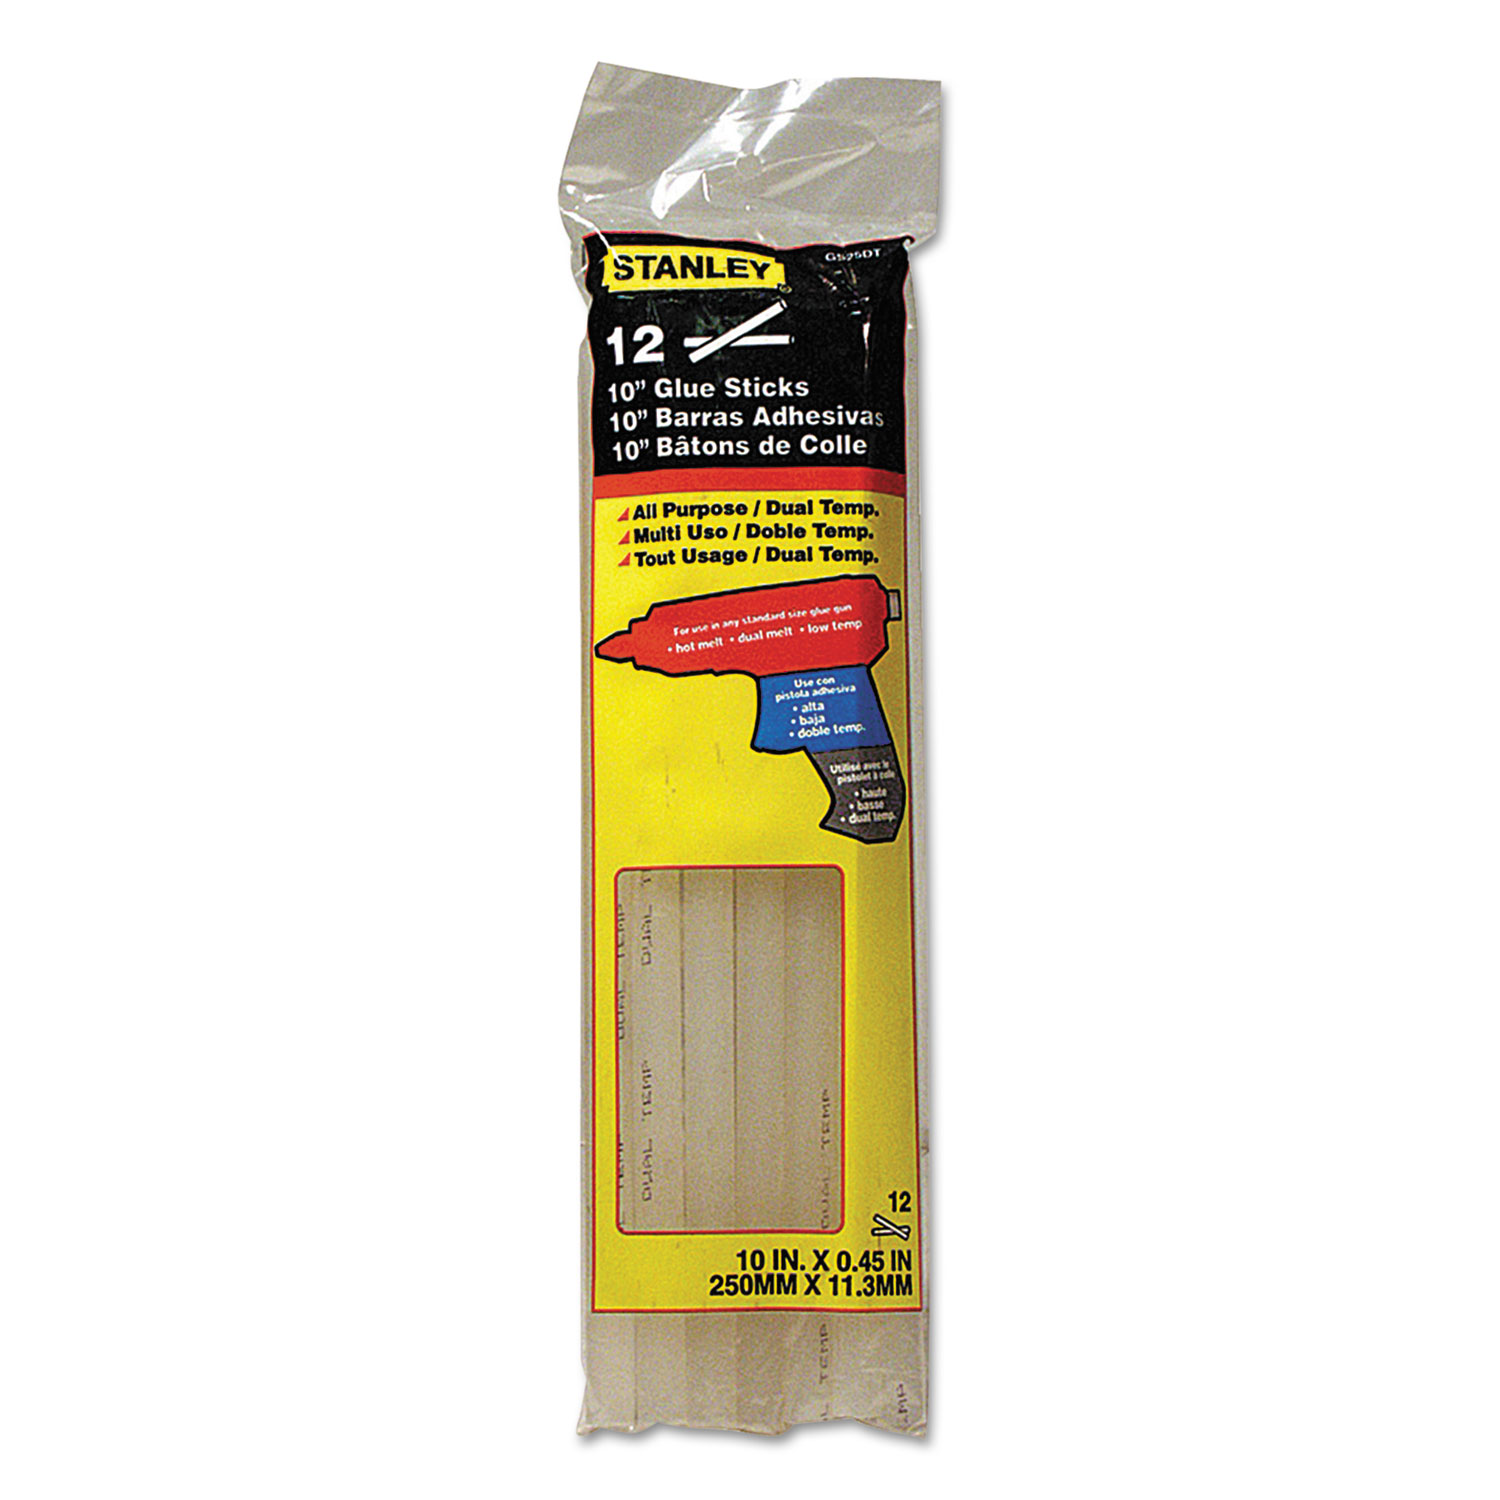 Dual Temperature 10 Glue Sticks, Clear, 12/Pack